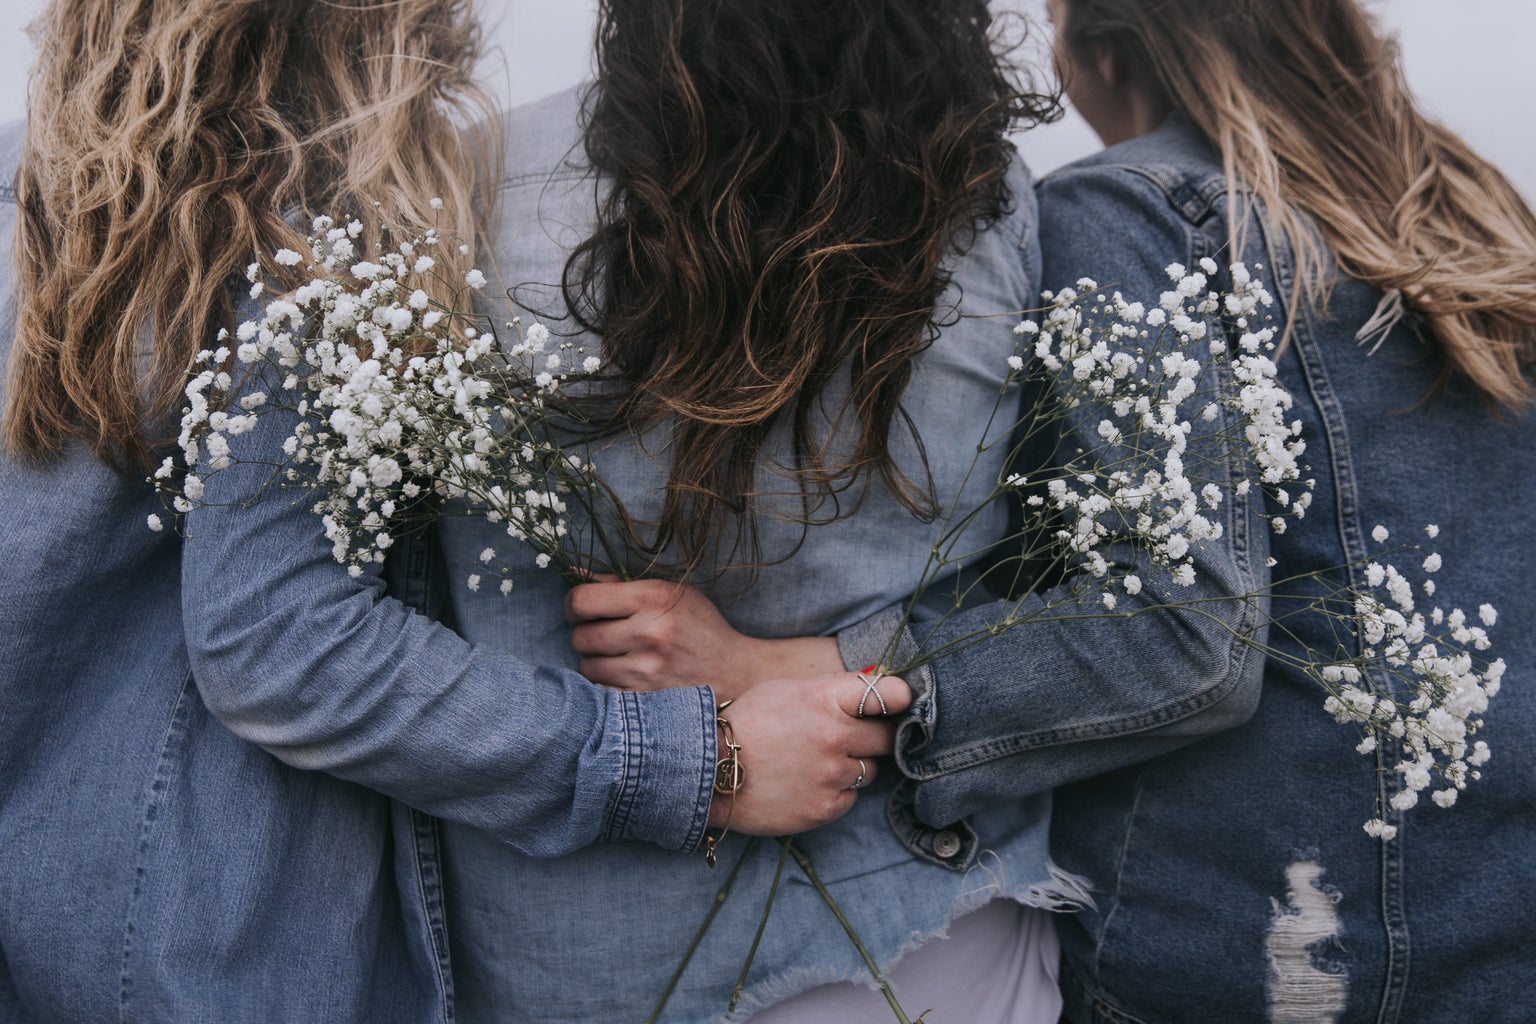 Women in jean jackets with flowers